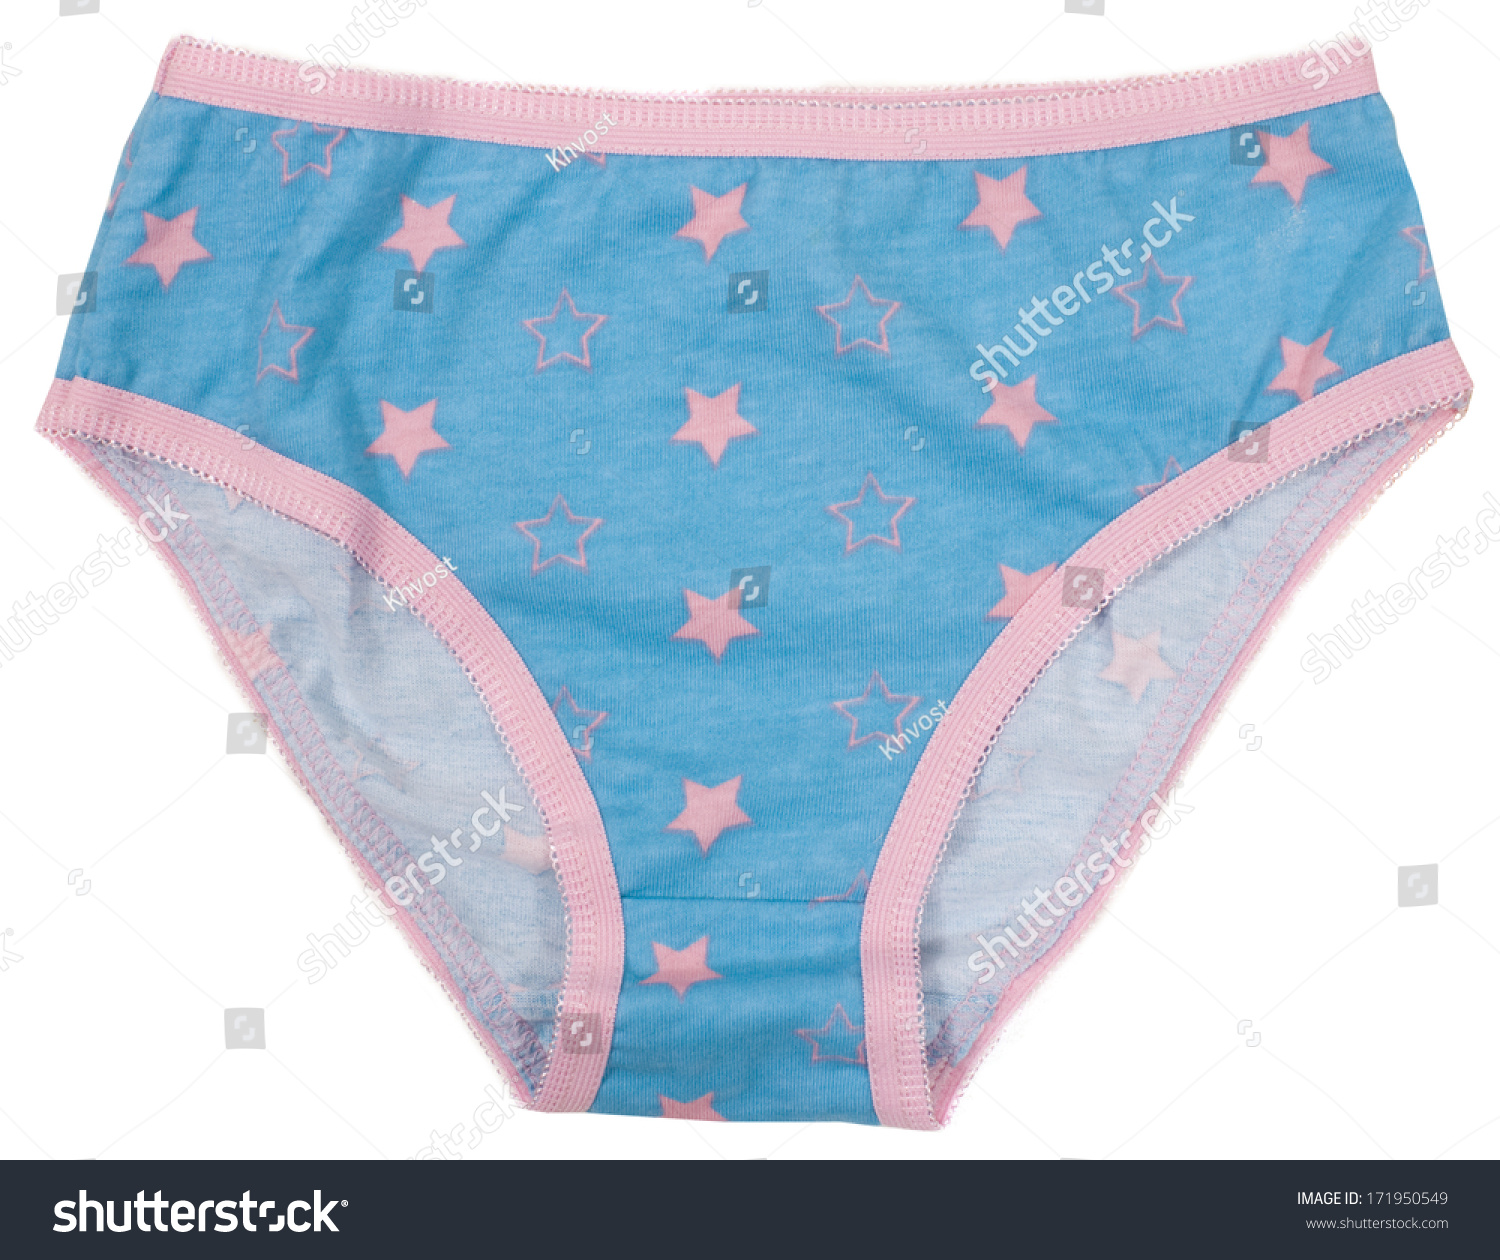 152 Childrens panties Images, Stock Photos & Vectors | Shutterstock